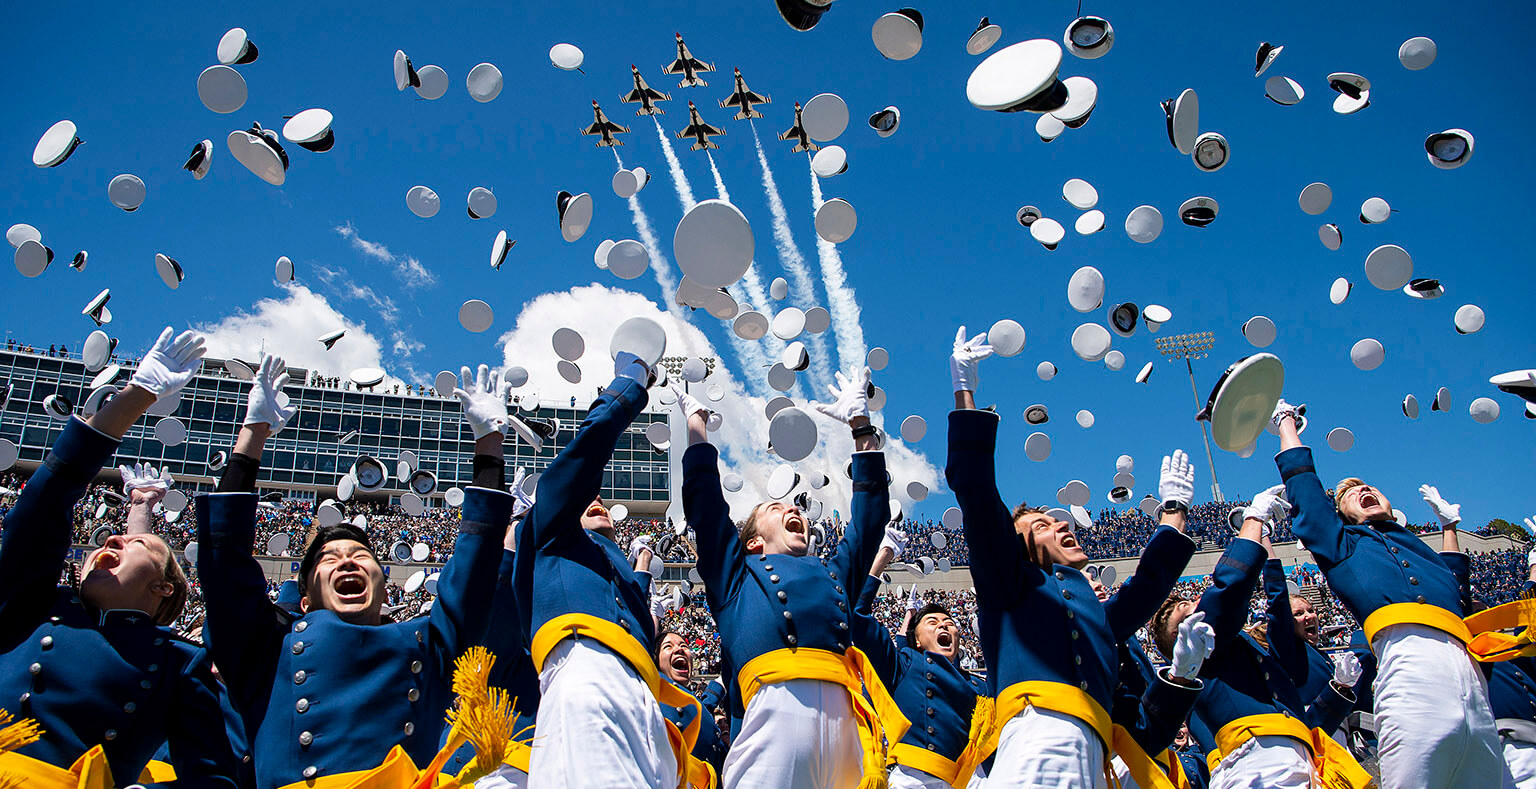 Cadets tossing hats at graduation